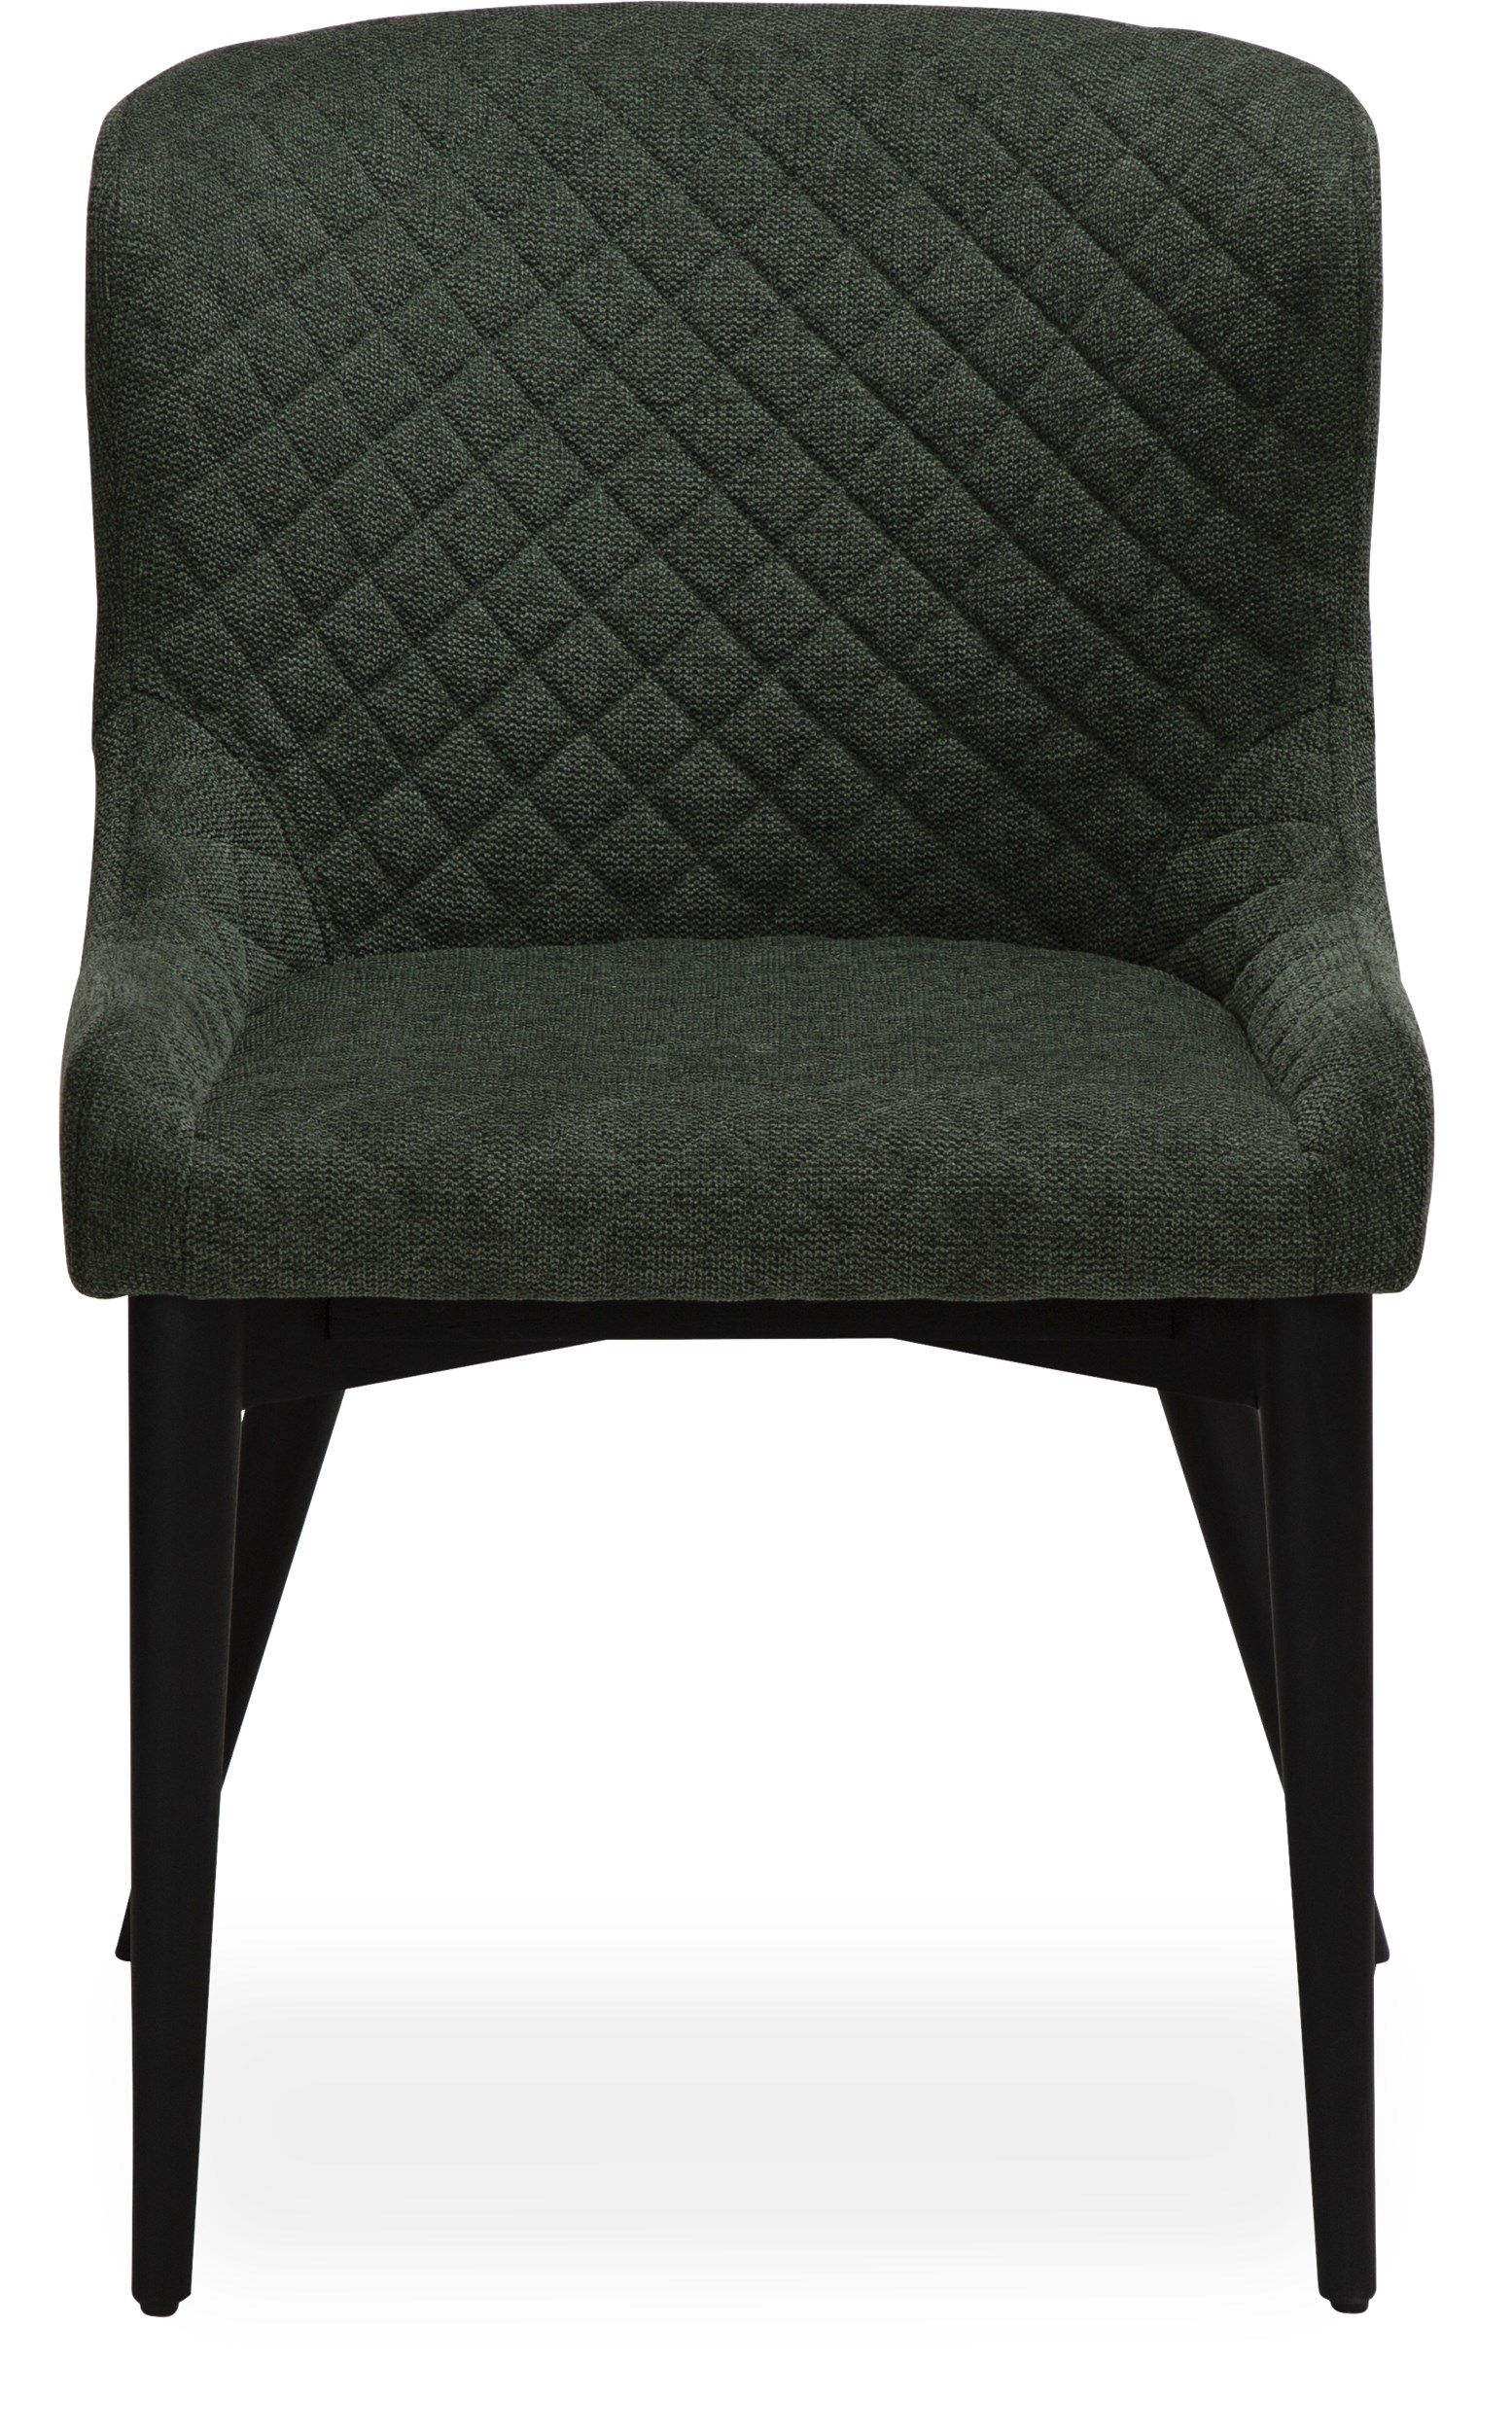 Vetro matstol - Sits i sage green textil och ben i svartmålad, massiv ek